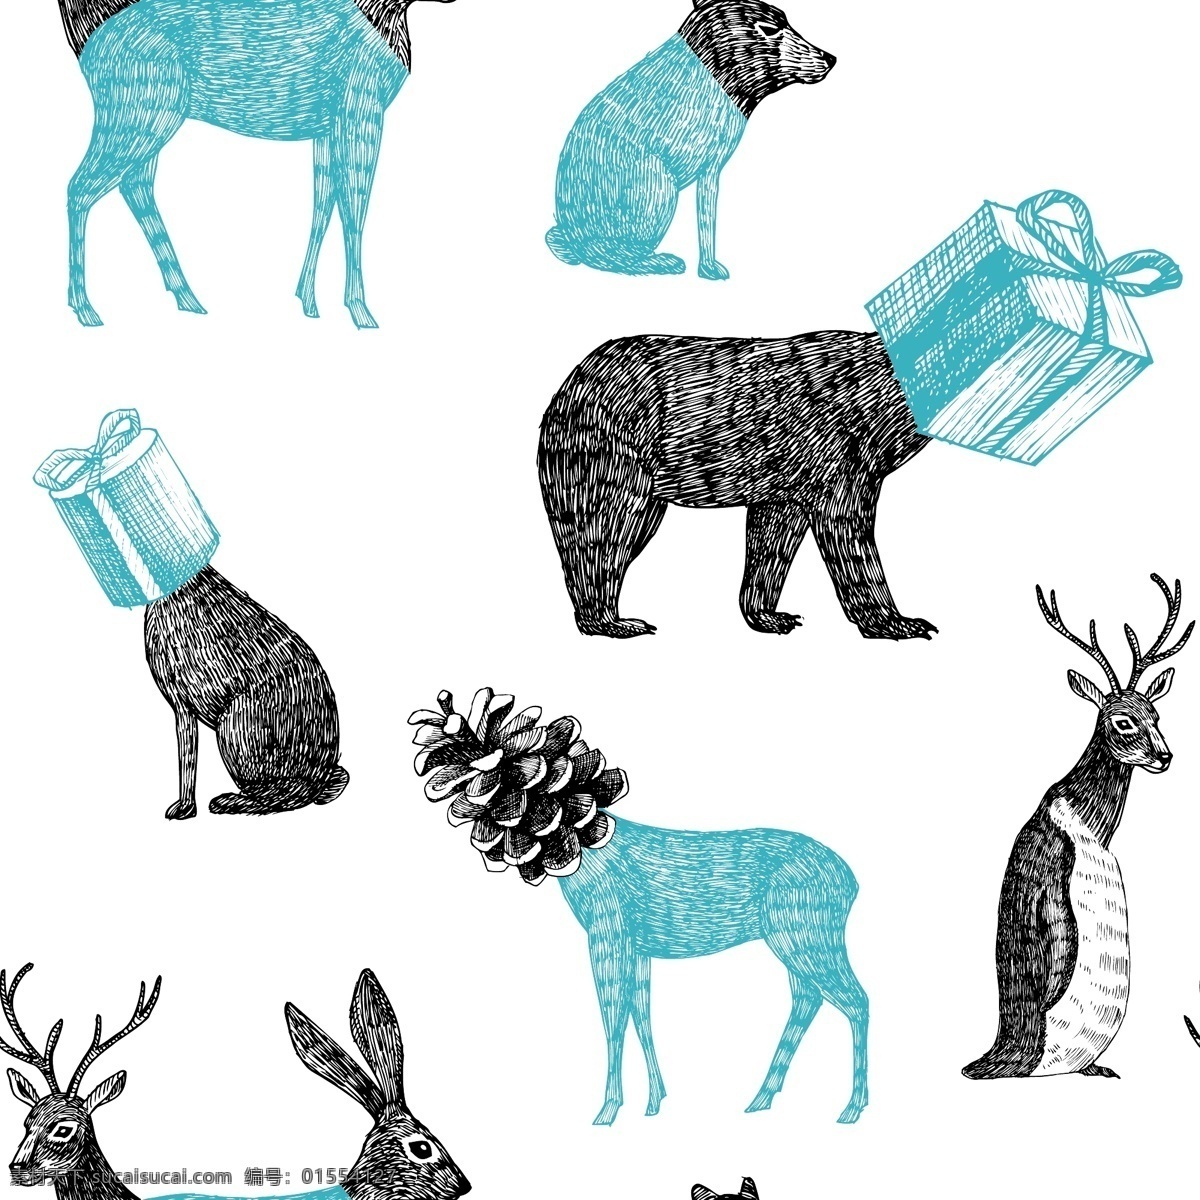 简约 创意 动物 圣诞 卡片 圣诞节 节日 矢量素材 设计素材 背景素材